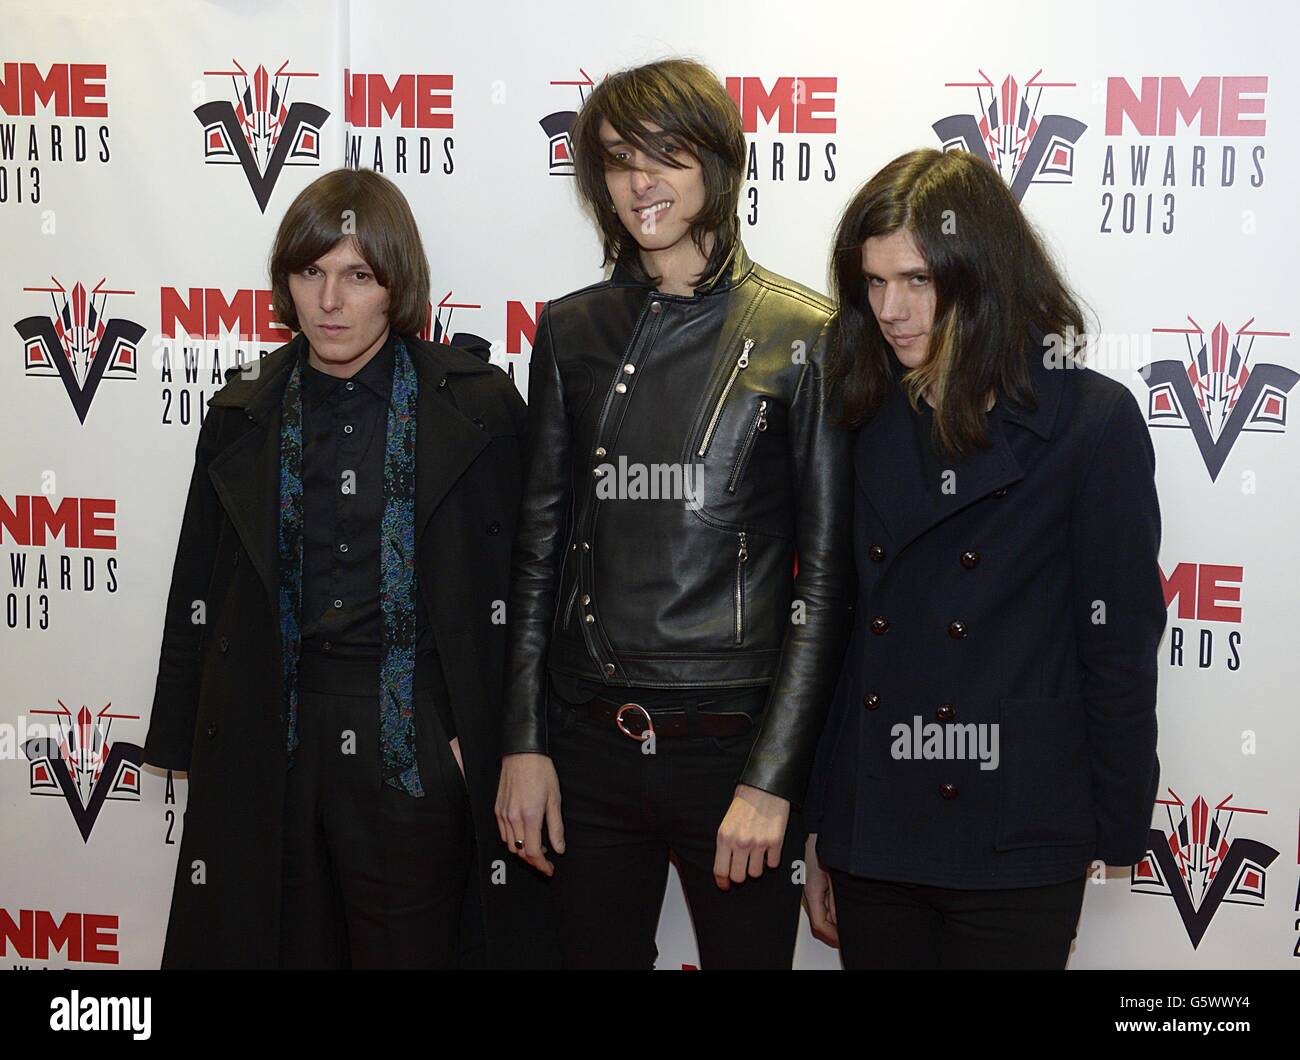 (Da sinistra a destra) Rhys Webb, Faris Badwan e Joshua Hayward degli orrori in arrivo per i 2013 NME Awards, al Troxy, Londra. Foto Stock